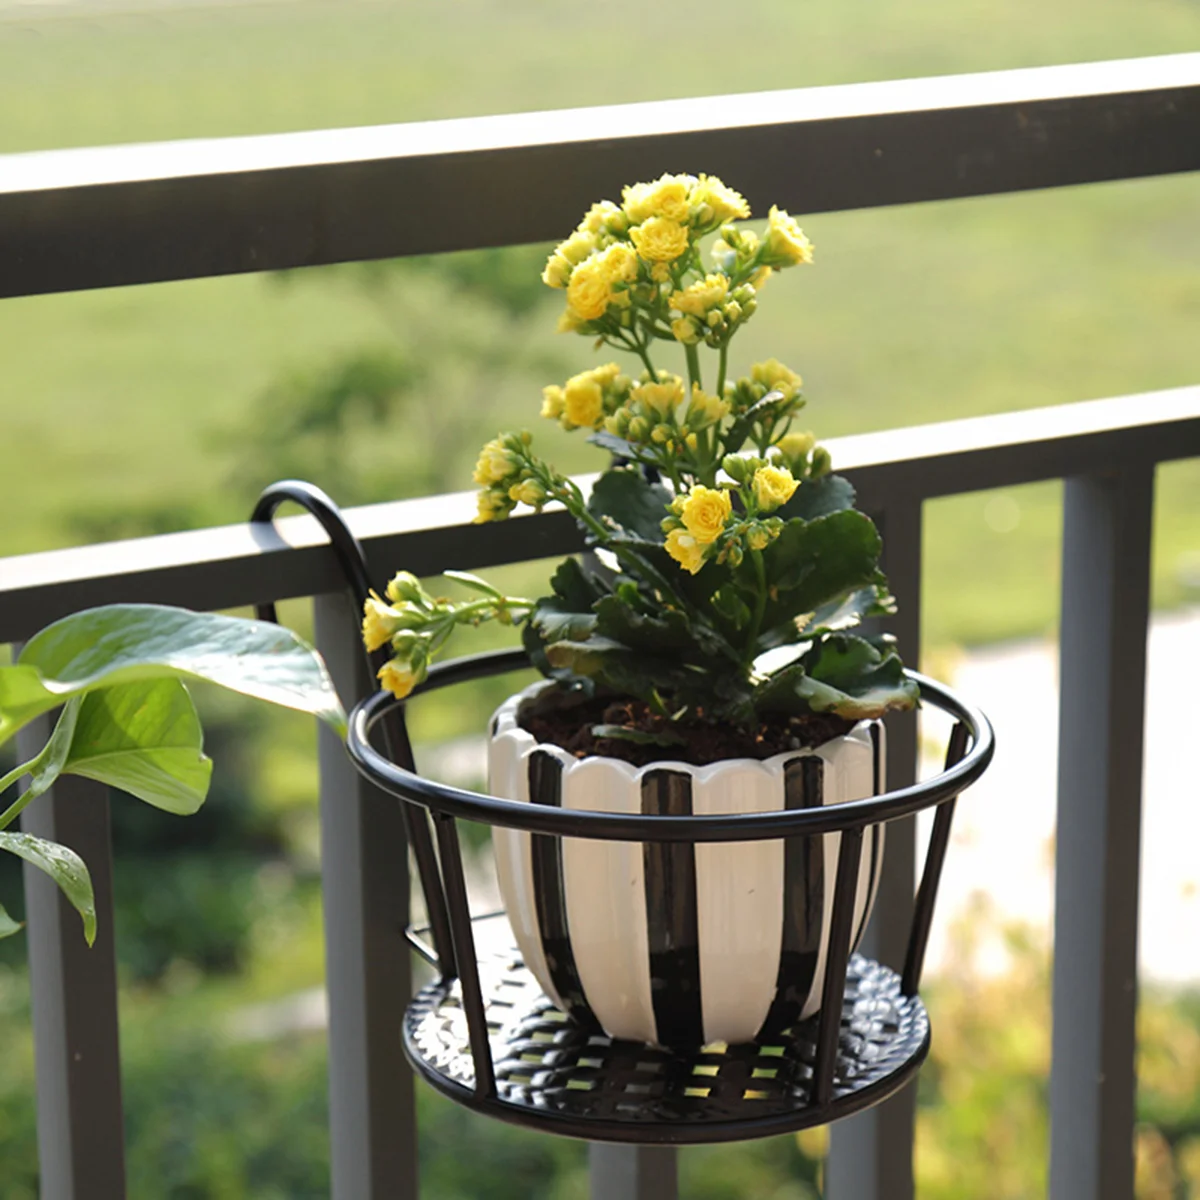 

Подставка для цветов Hangingflower, уличная вешалка для цветочных горшков на балконе, металлическая полка для корзин, комнатных Горшков